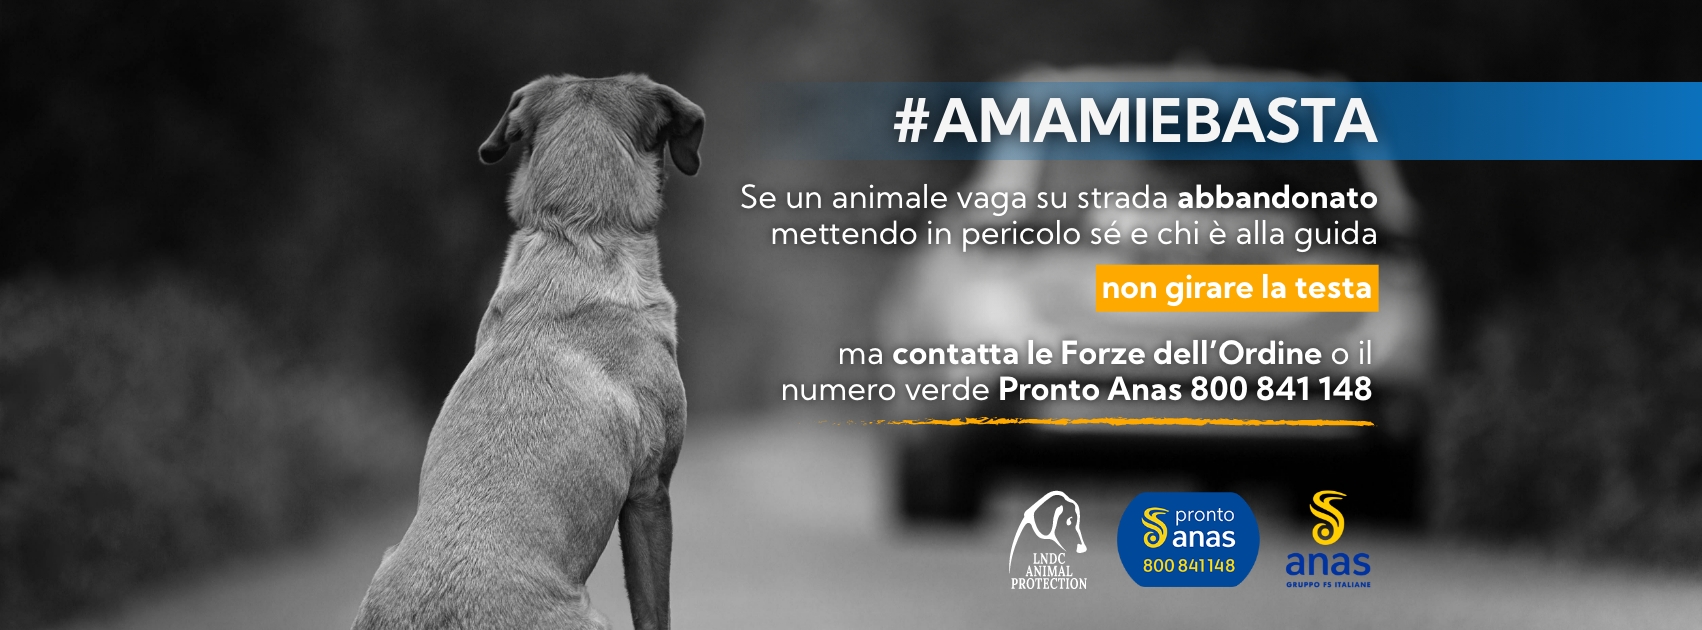 #AMAMIeBASTA: riparte la campagna Anas contro l’abbandono di cani e gatti